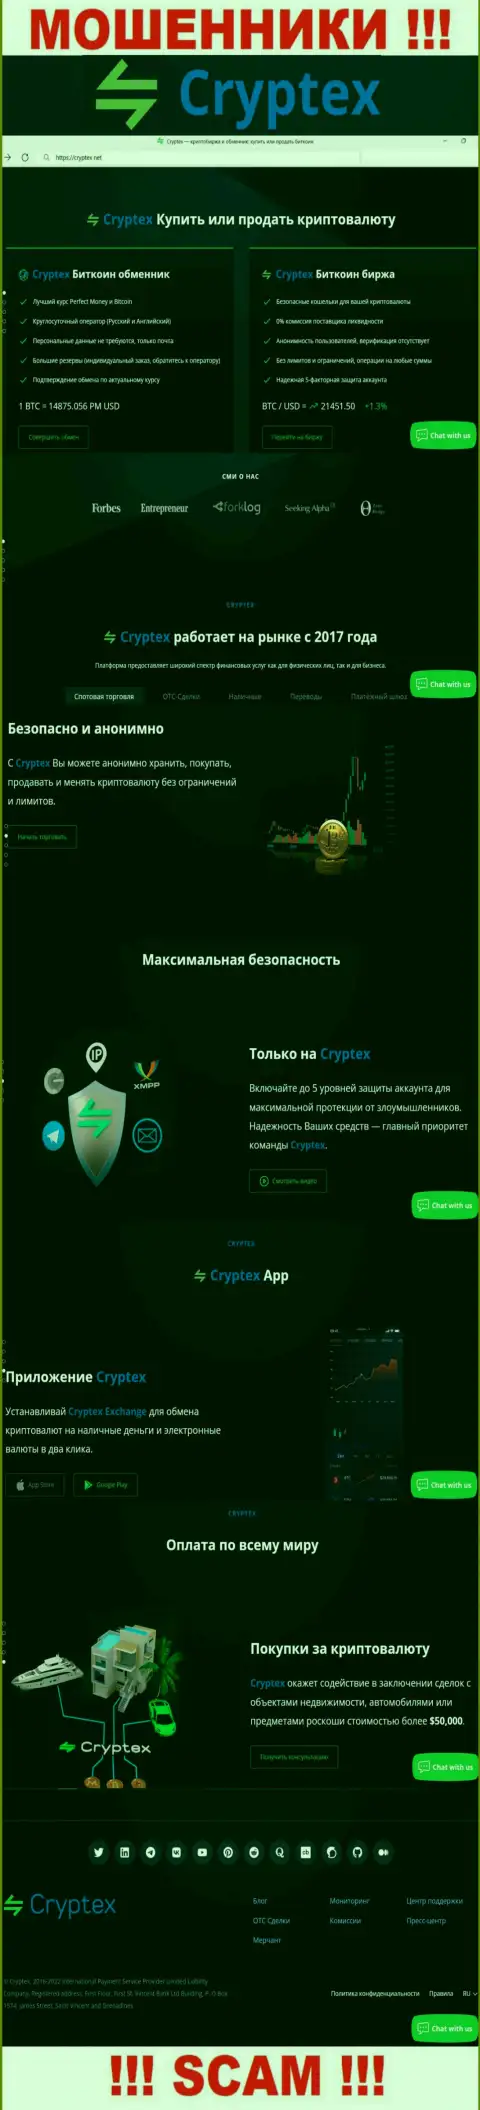 Скрин официального сайта жульнической организации Криптекс Нет